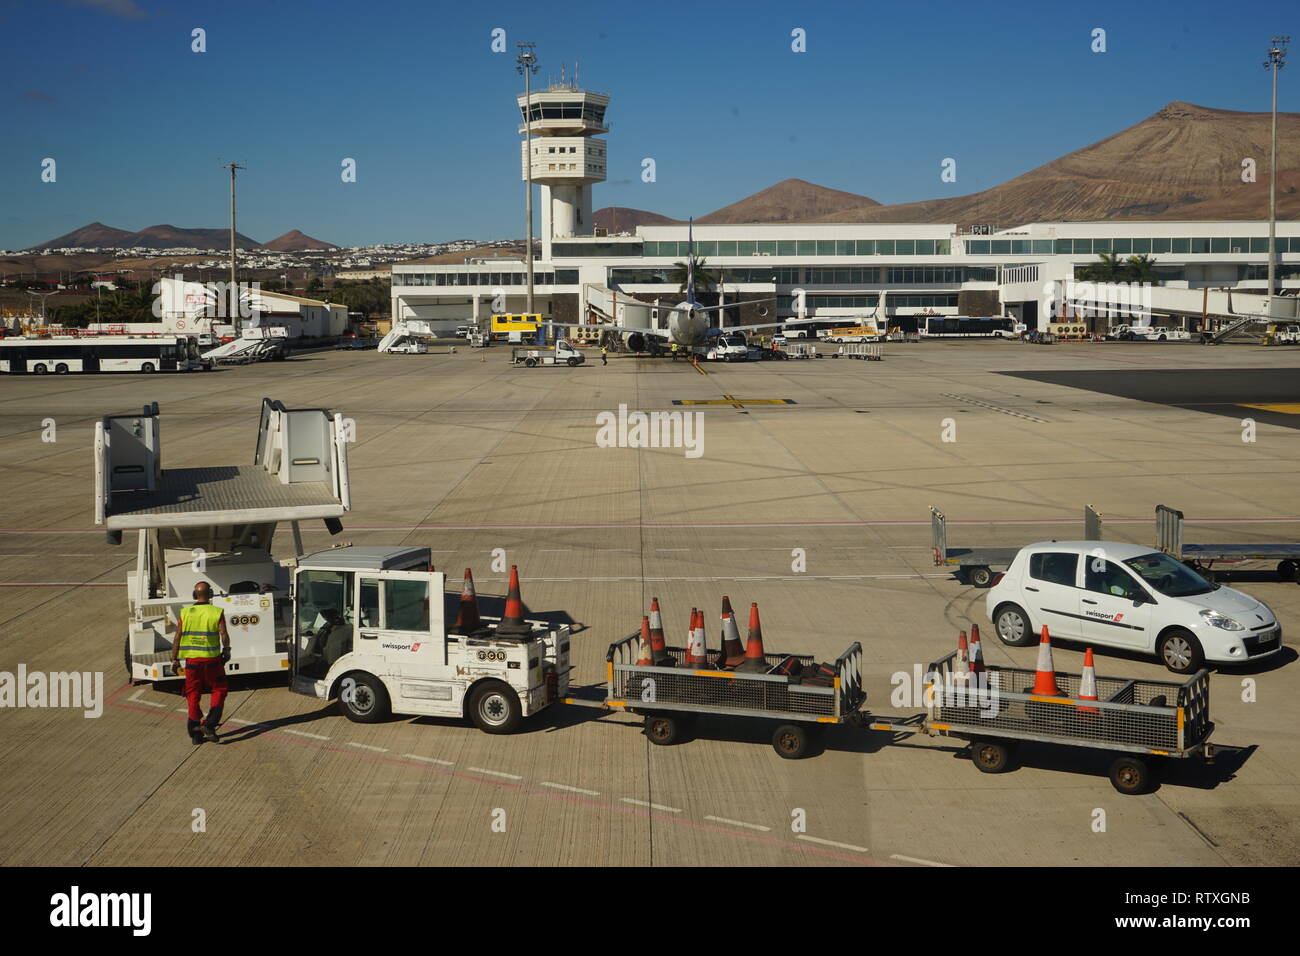 Flughafen Arrecife, Lanzarote, Kanarische Inseln, Spanien Stock Photo